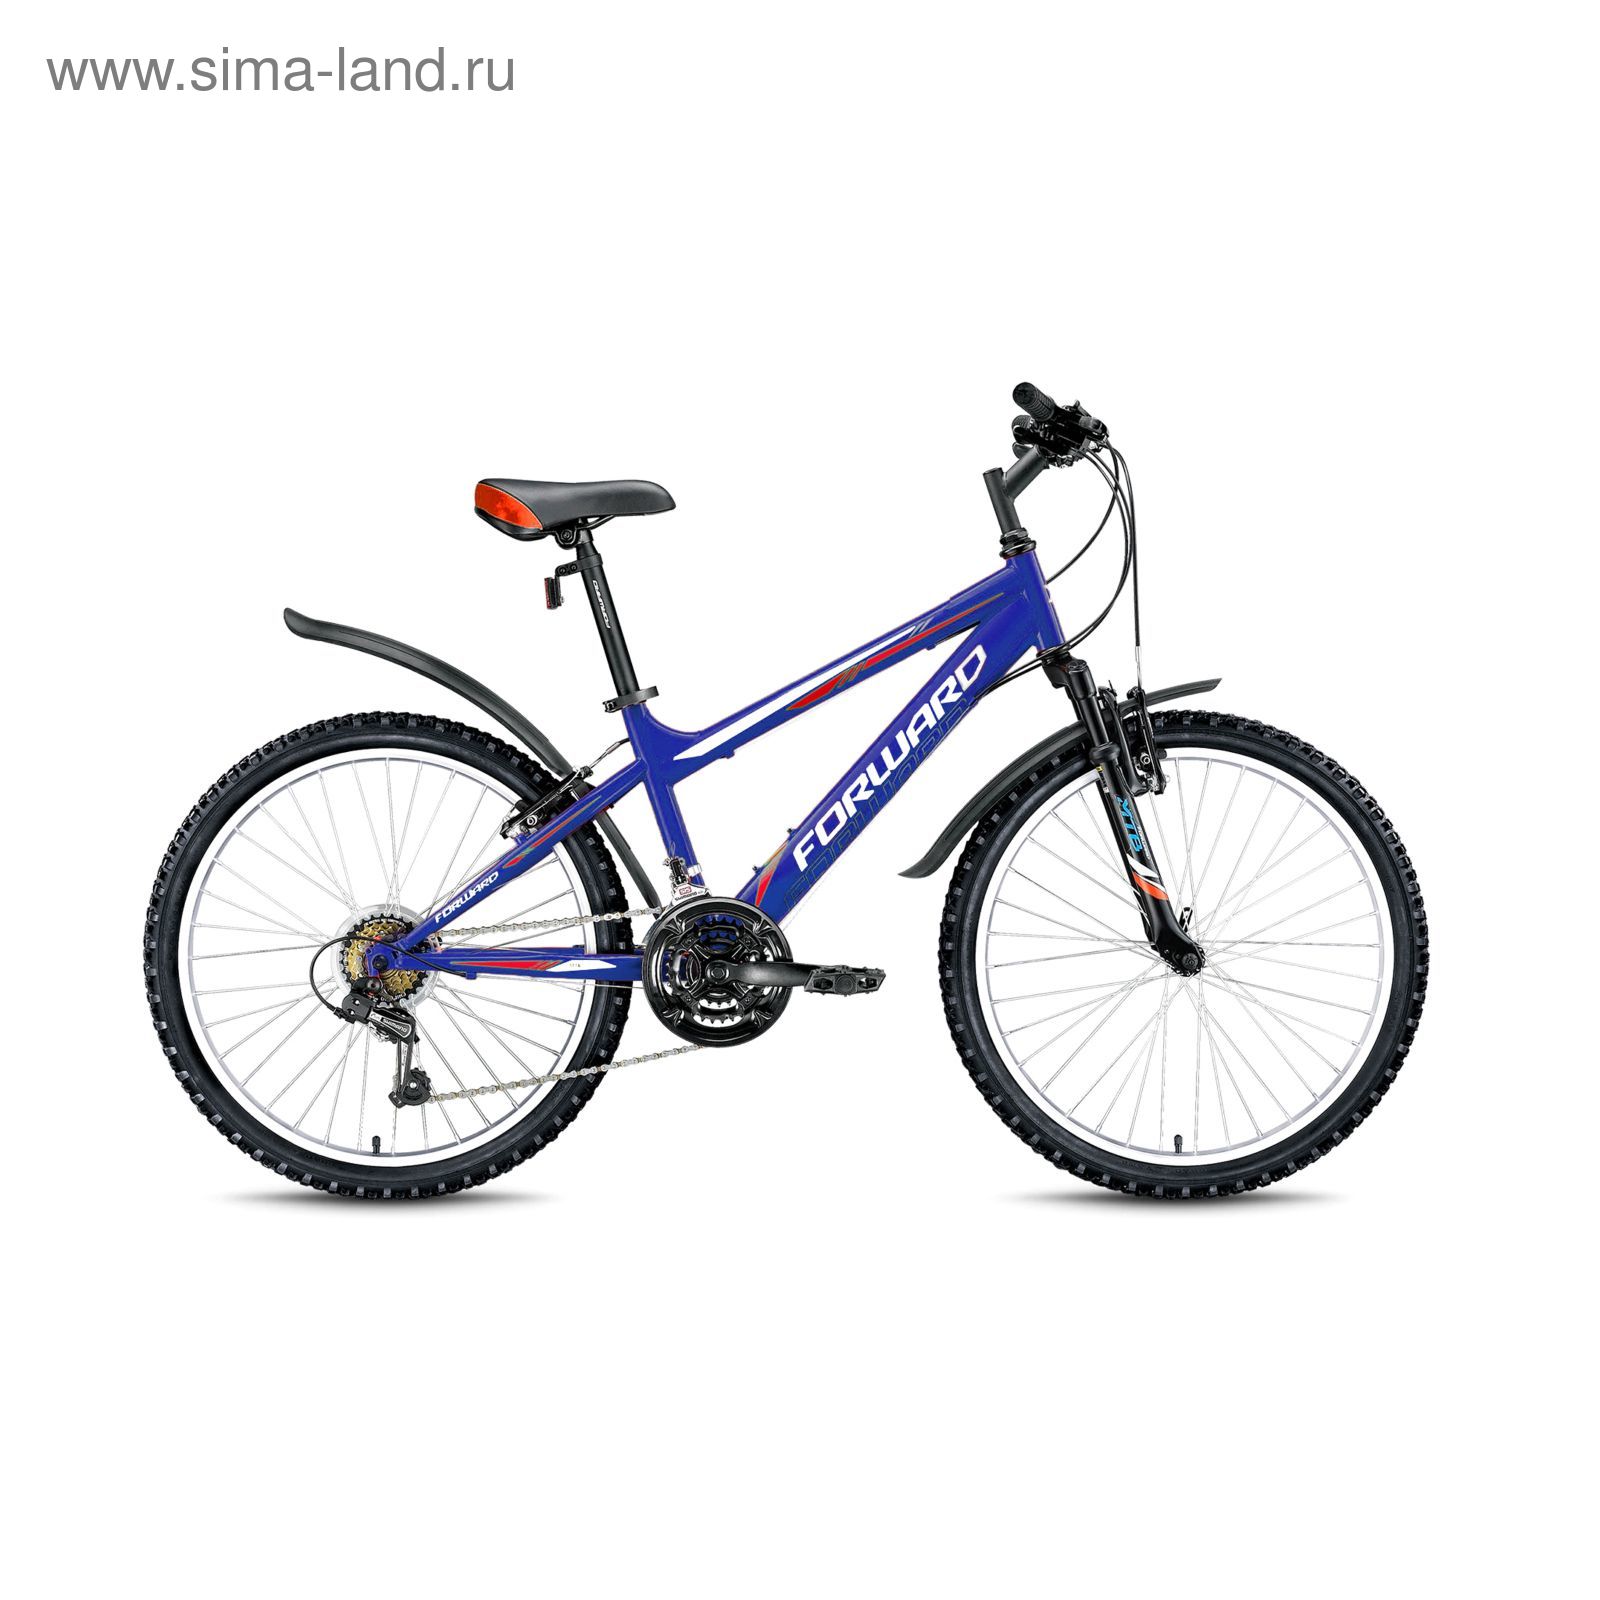 Велосипед 24" Forward Titan 2.0, 2016, цвет синий, размер 14"